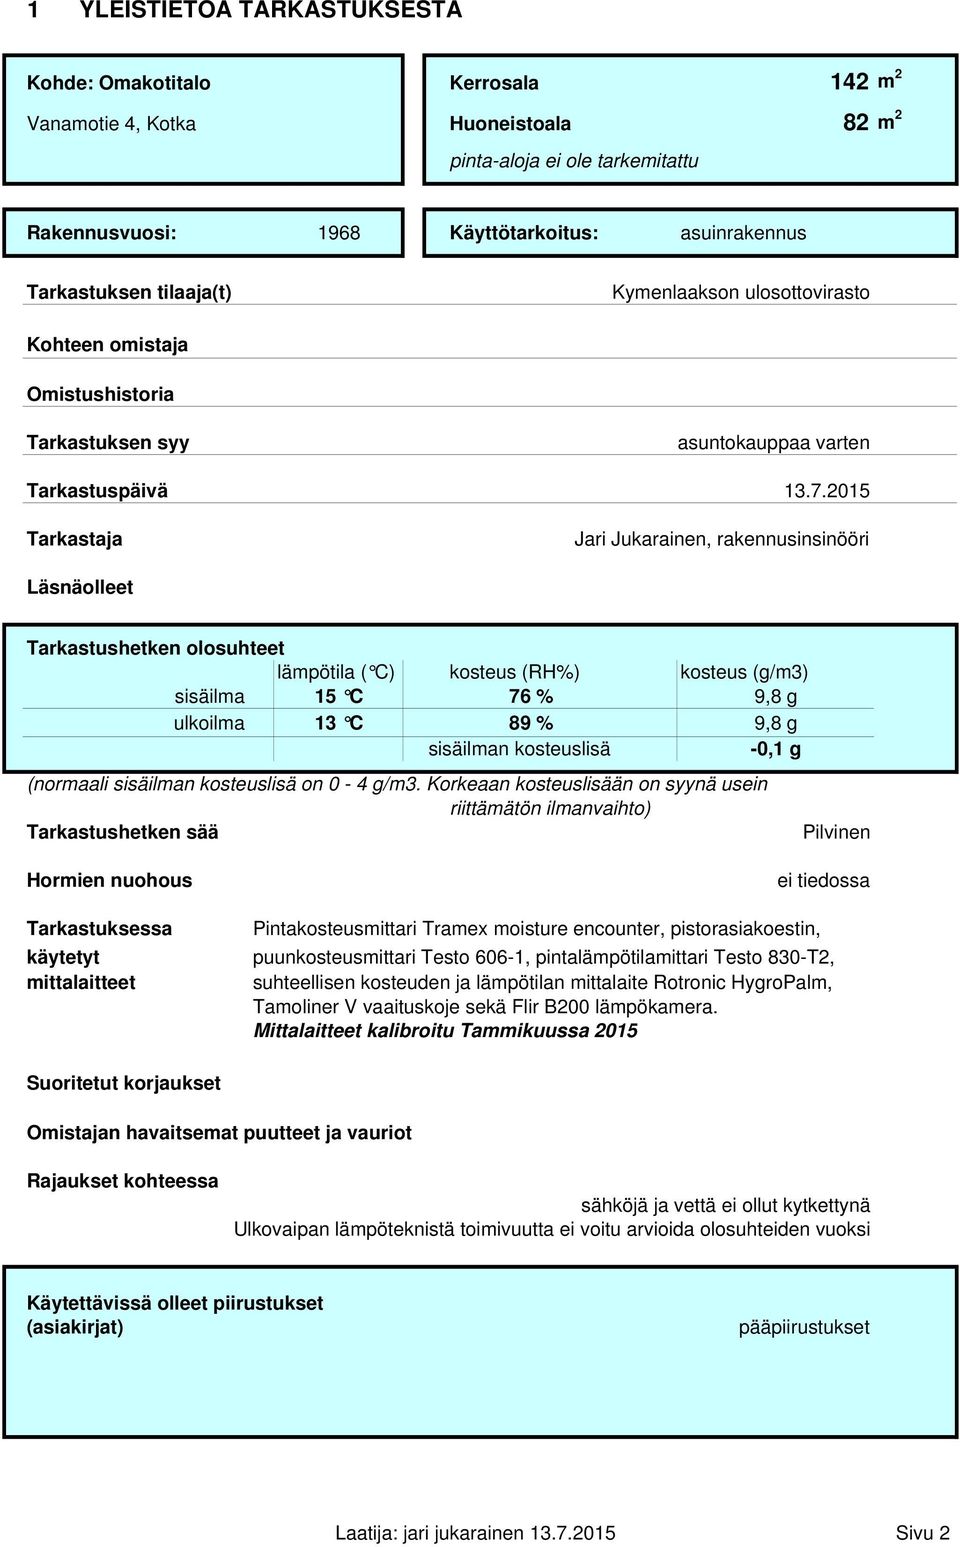 2015 Tarkastaja Jari Jukarainen, rakennusinsinööri Läsnäolleet Tarkastushetken olosuhteet lämpötila ( C) kosteus (RH%) kosteus (g/m3) sisäilma 15 C 76 % 9,8 g ulkoilma 13 C 89 % 9,8 g sisäilman